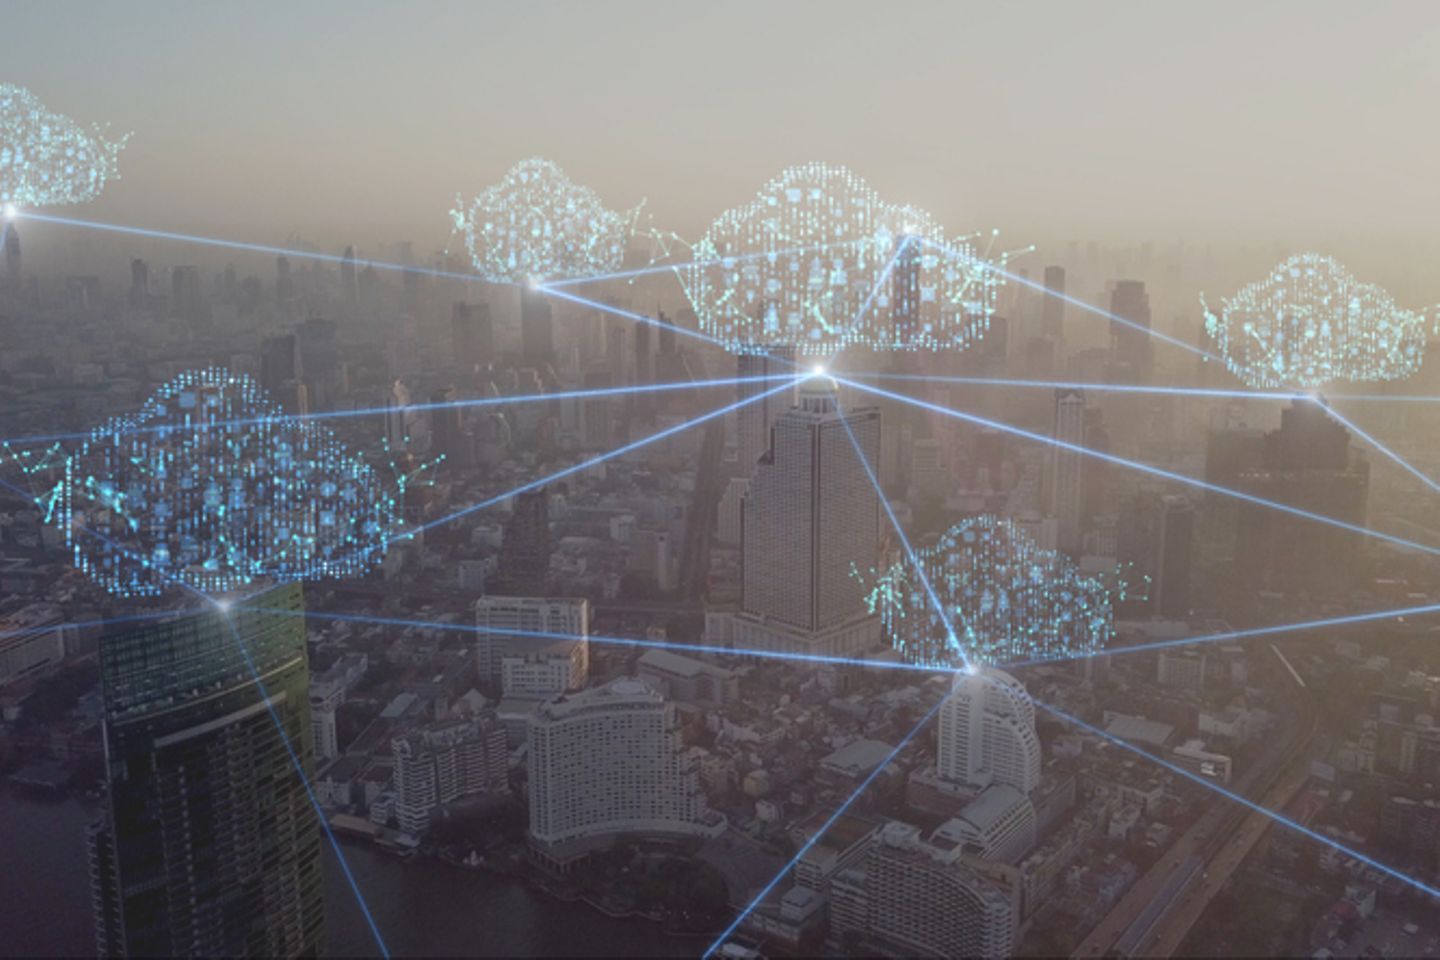 Virtuelle Darstellung von miteinander vernetzten Clouds vor einer Stadtansicht aus der Luft.